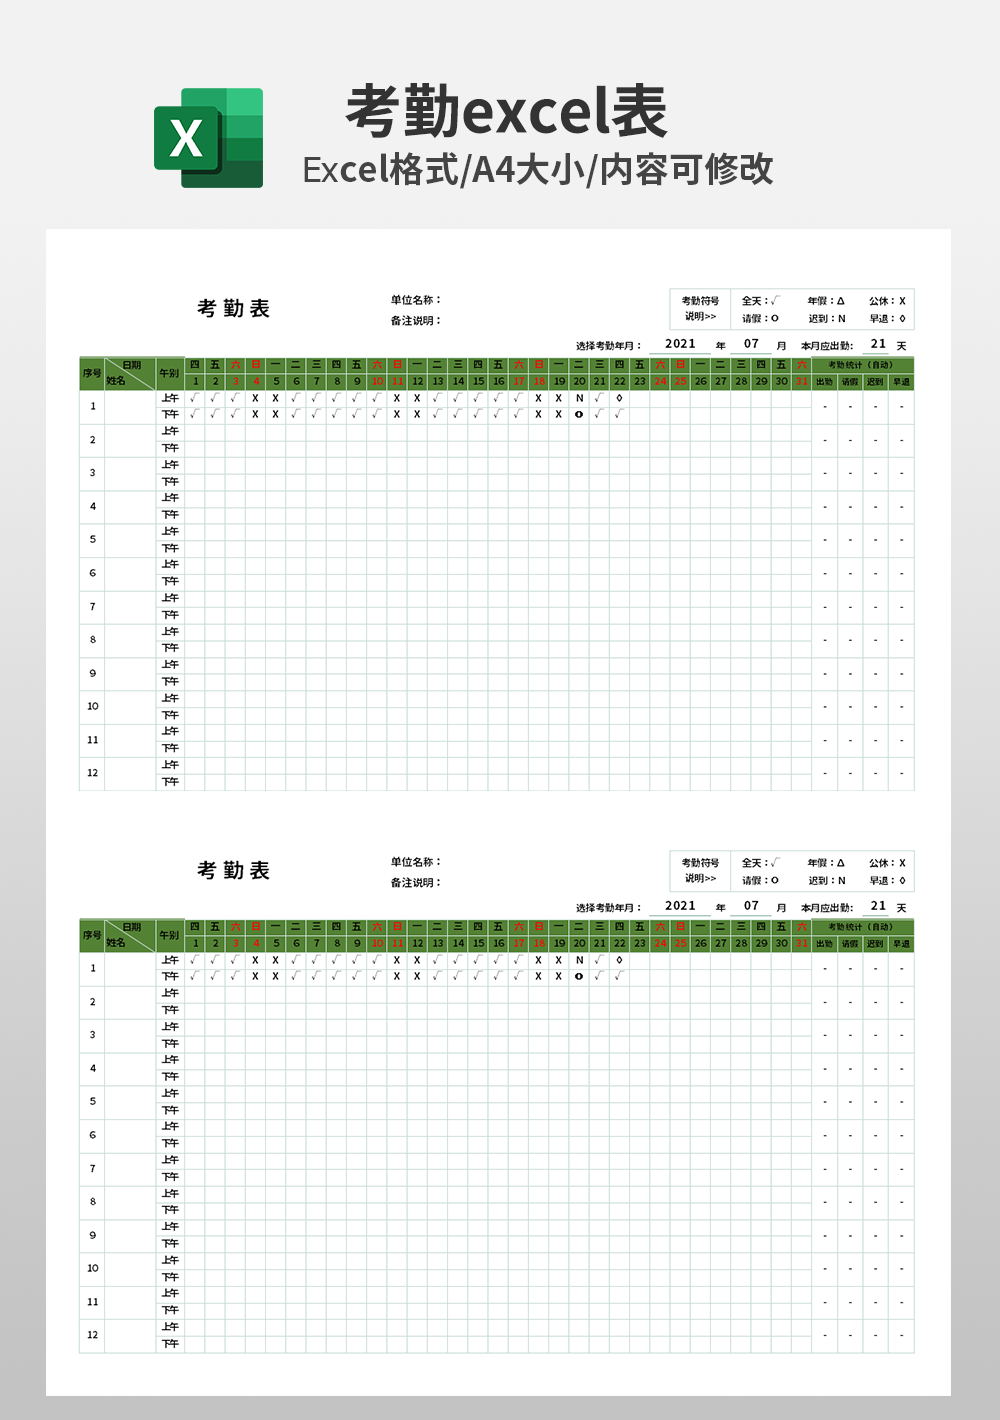 多岗位考勤表-自动统计每月考勤及查询明细模板